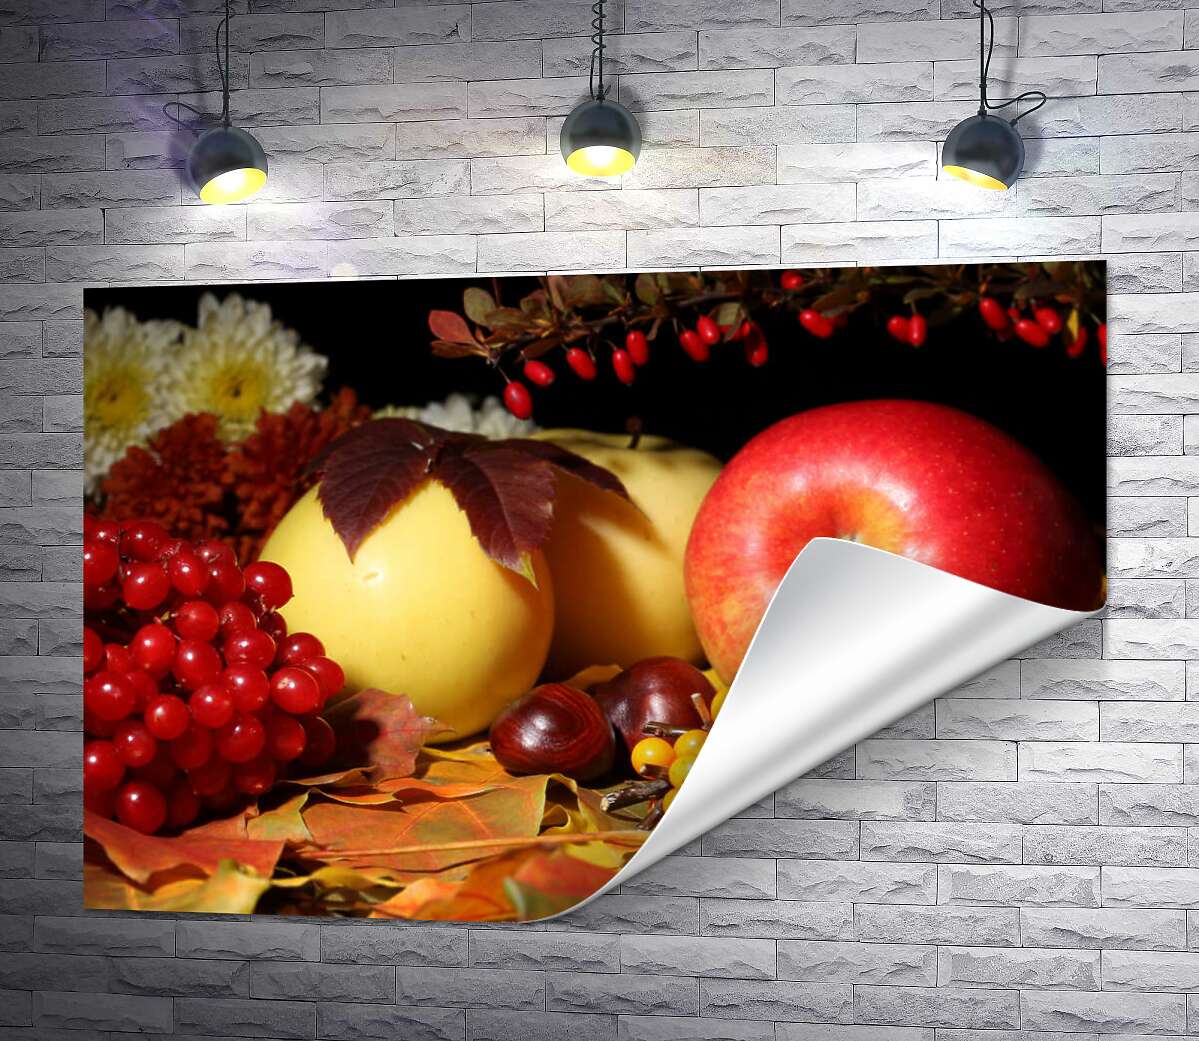 друк Осінній натюрморт: яблука, калина, обліпиха та каштани на жовтому листі